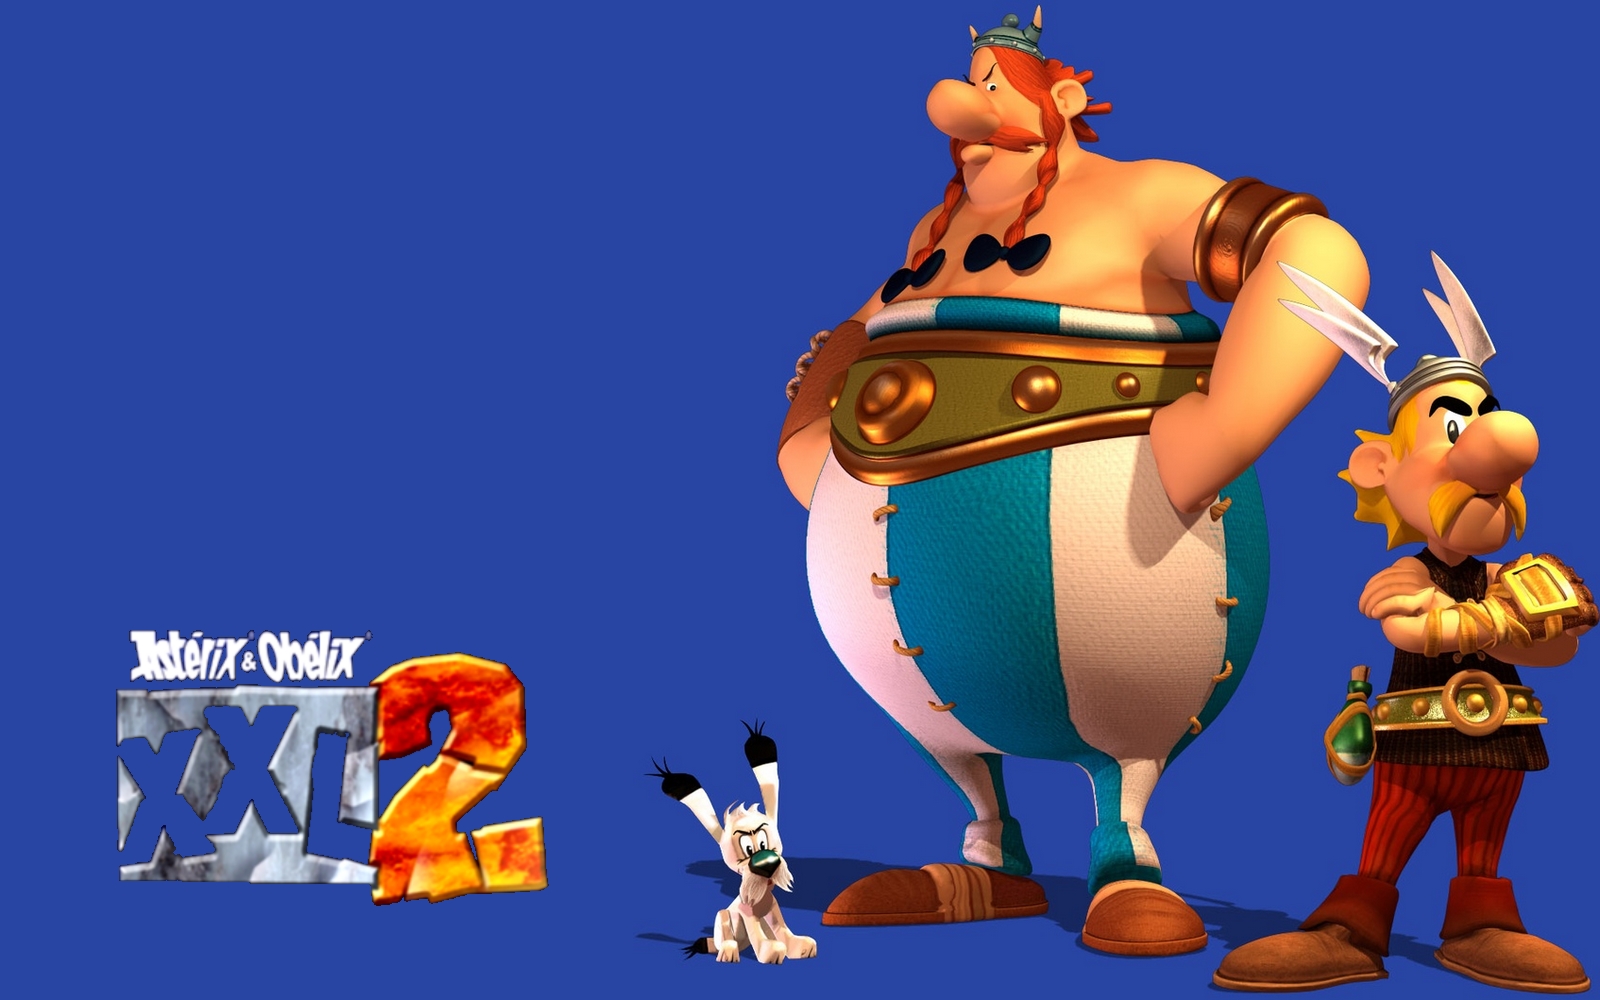 Asterix Obelix Xxl 2 Mission Las Vegum Details Launchbox Images, Photos, Reviews